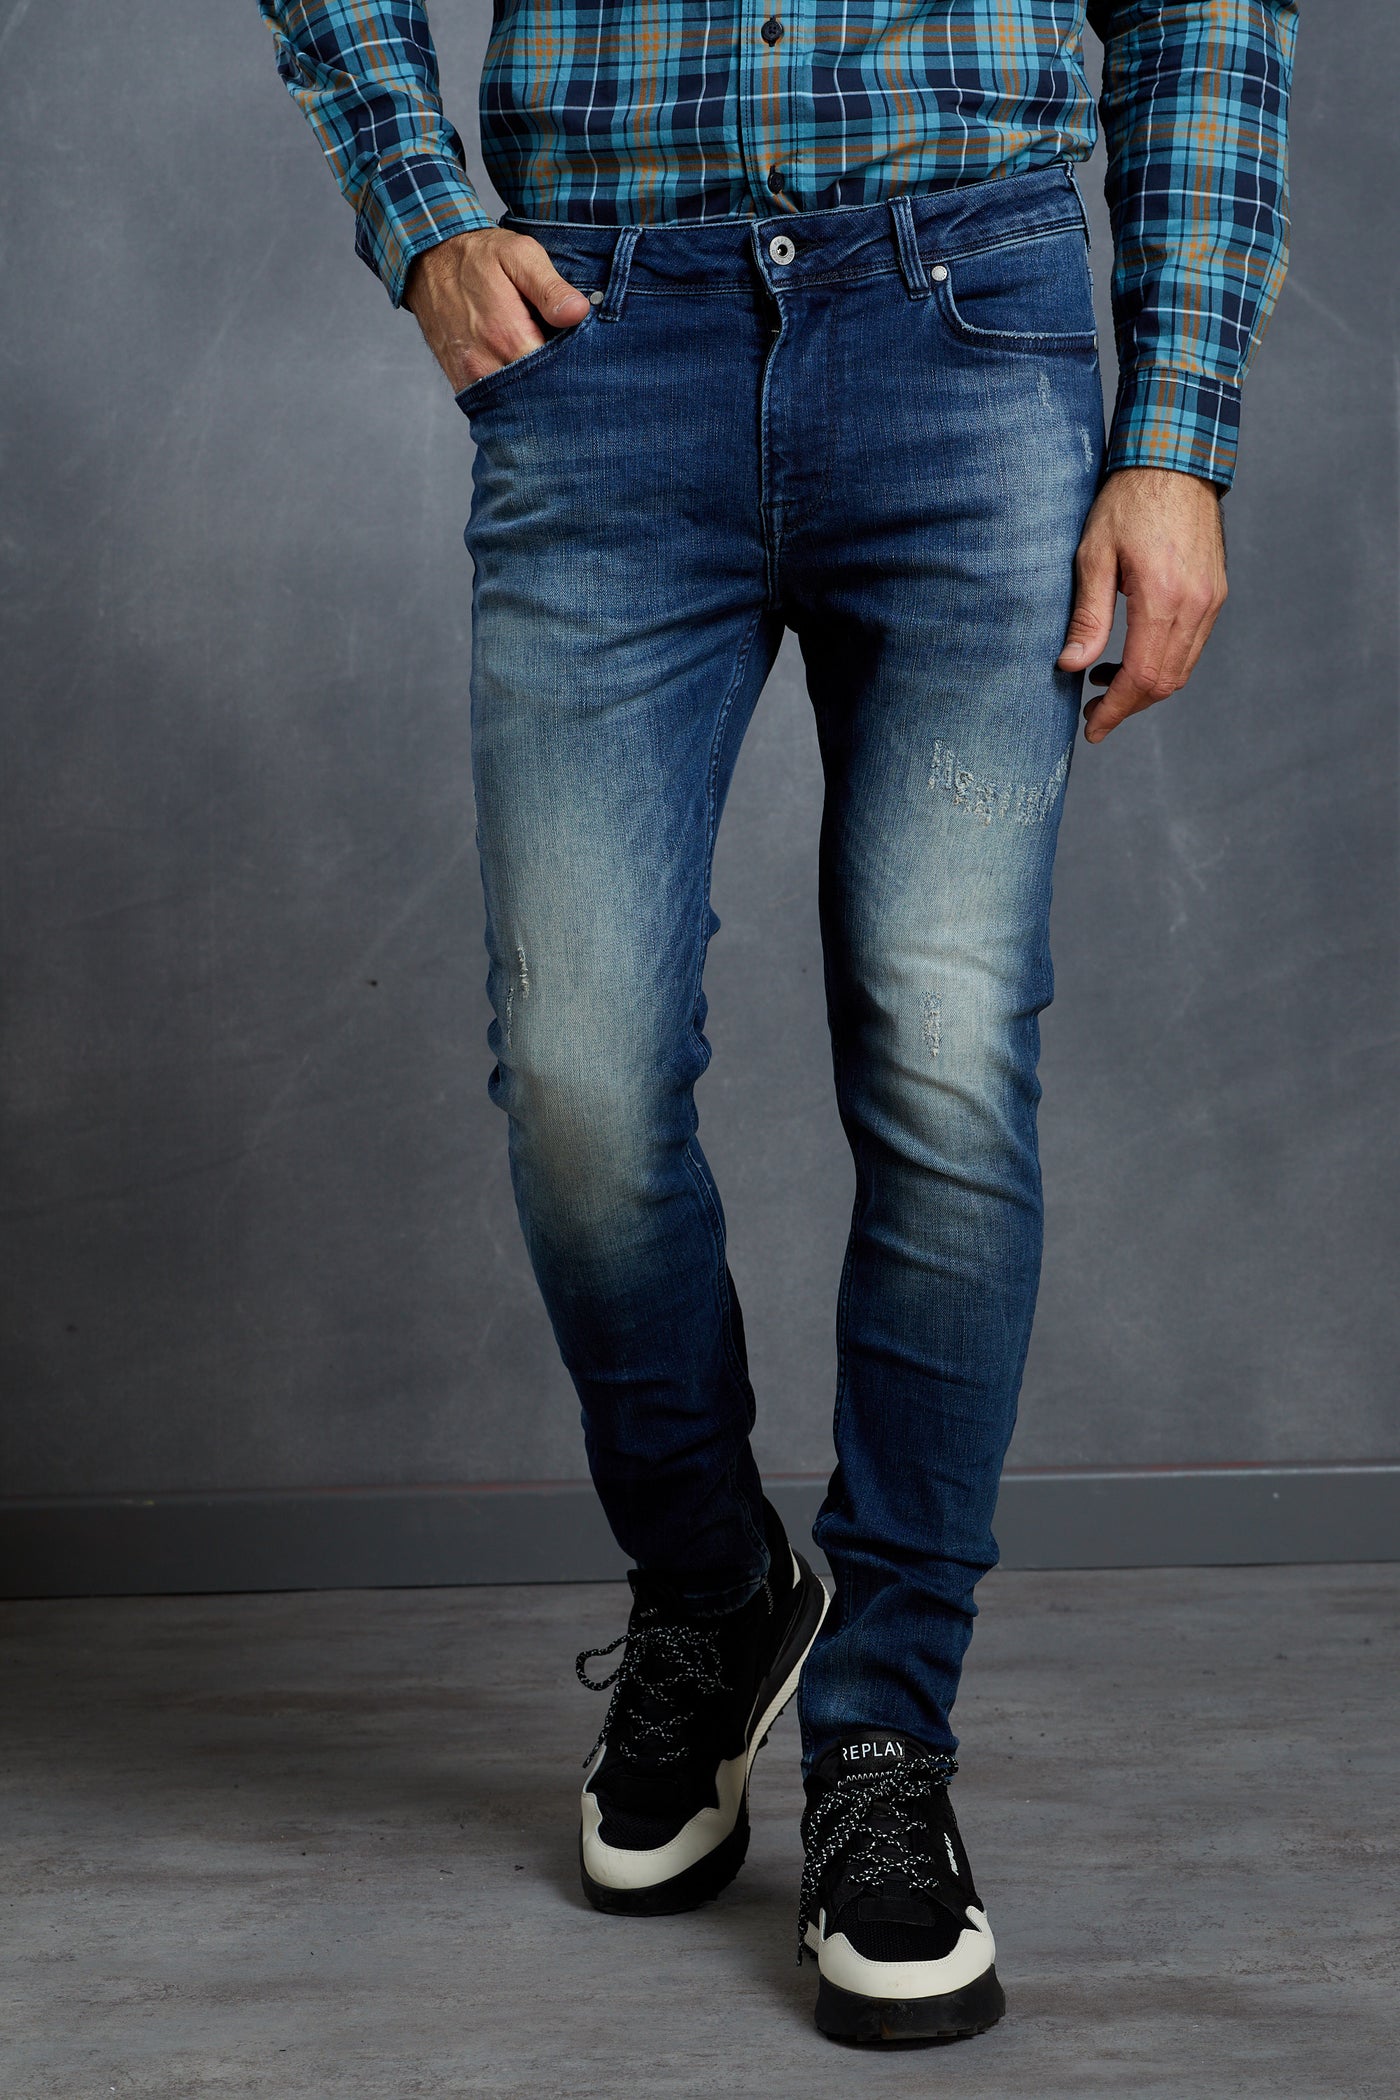 מכנס ג'ינס סקיני בצבע כחול